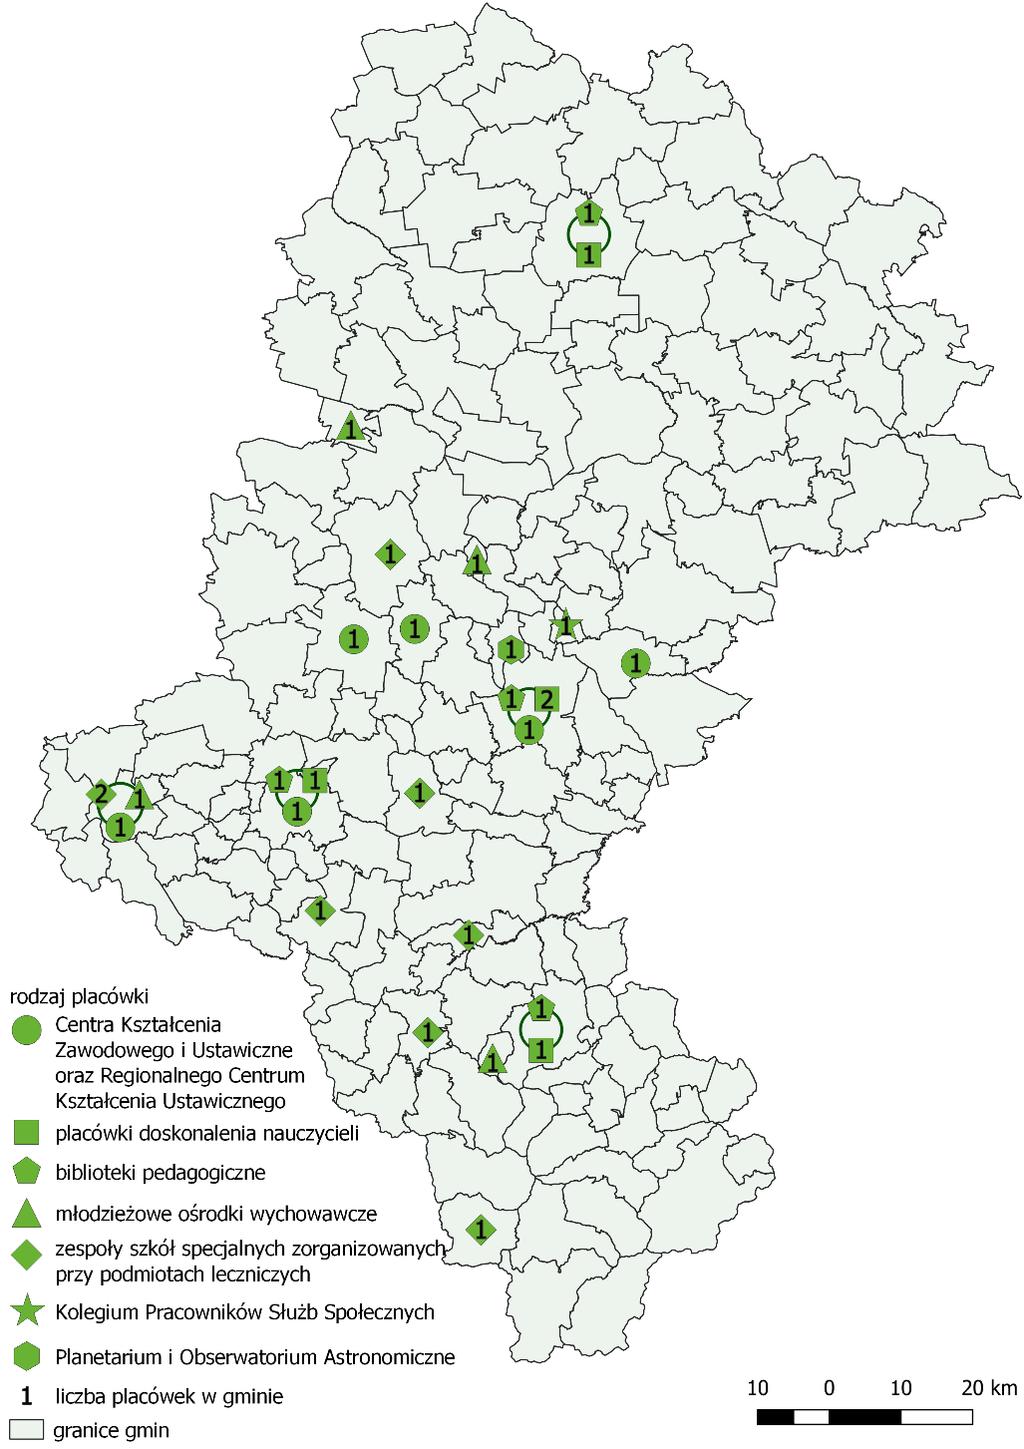 Mapa 19. Placówki edukacyjne w województwie śląskim. Źródło: opracowanie własne.